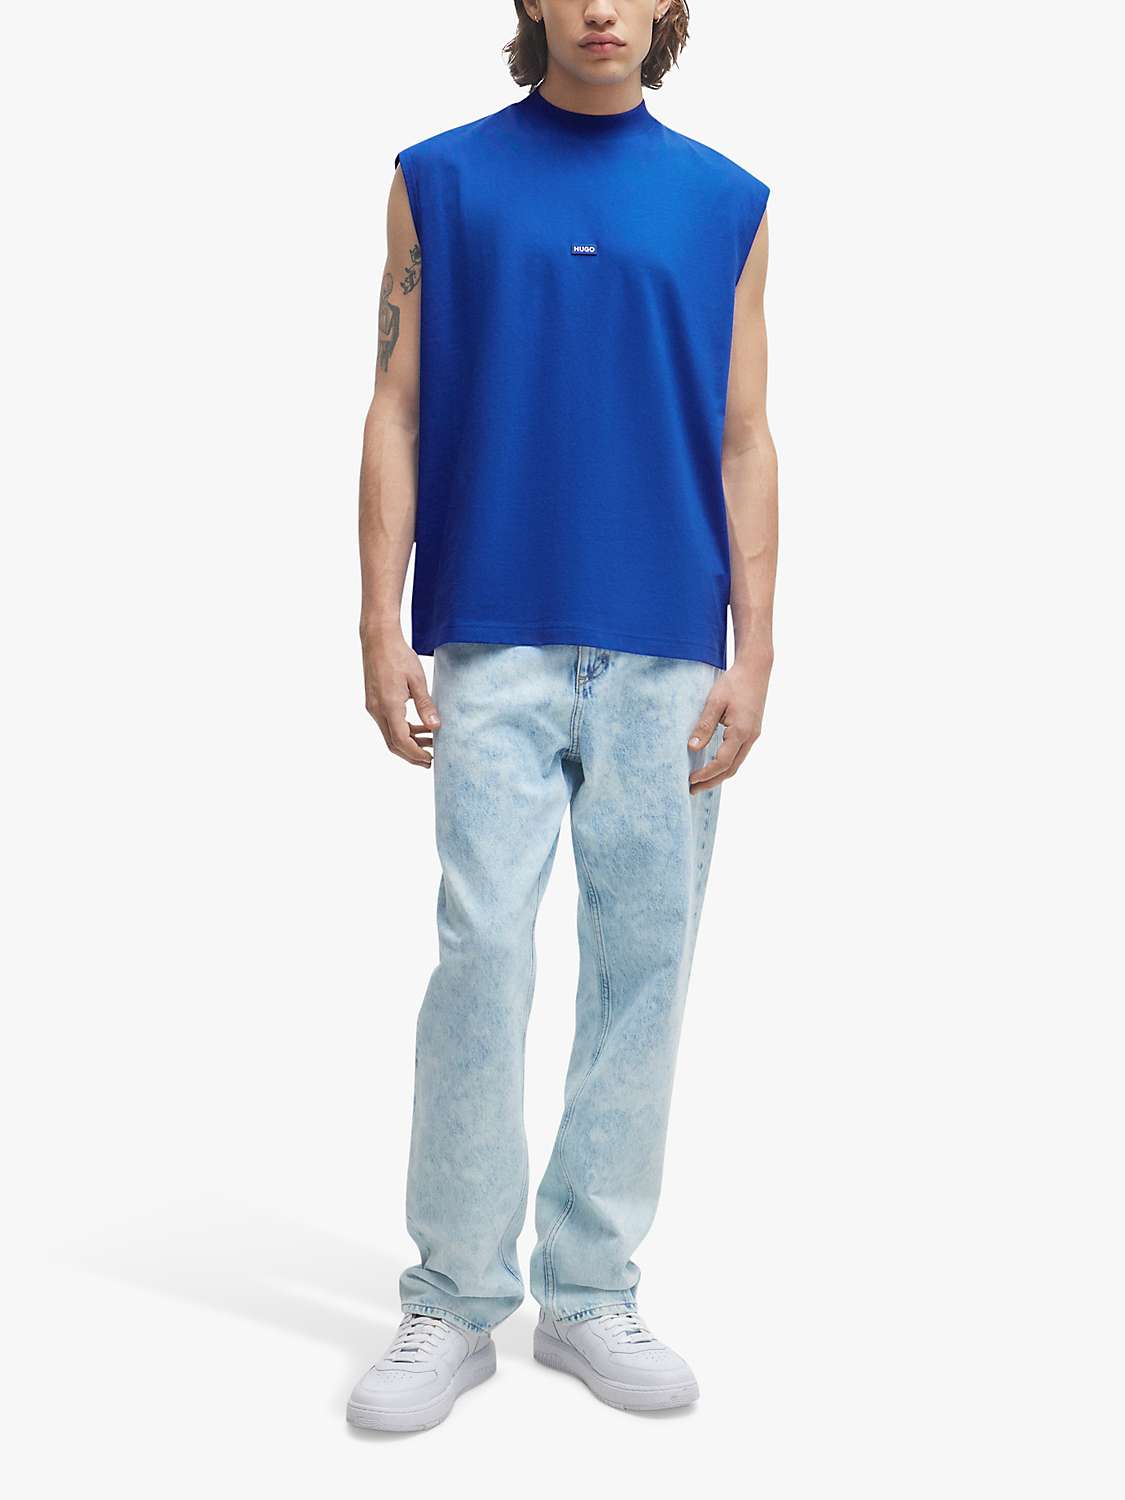 Buy HUGO Navertz 493 Short Sleeve T-Shirt, Open Blue Online at johnlewis.com